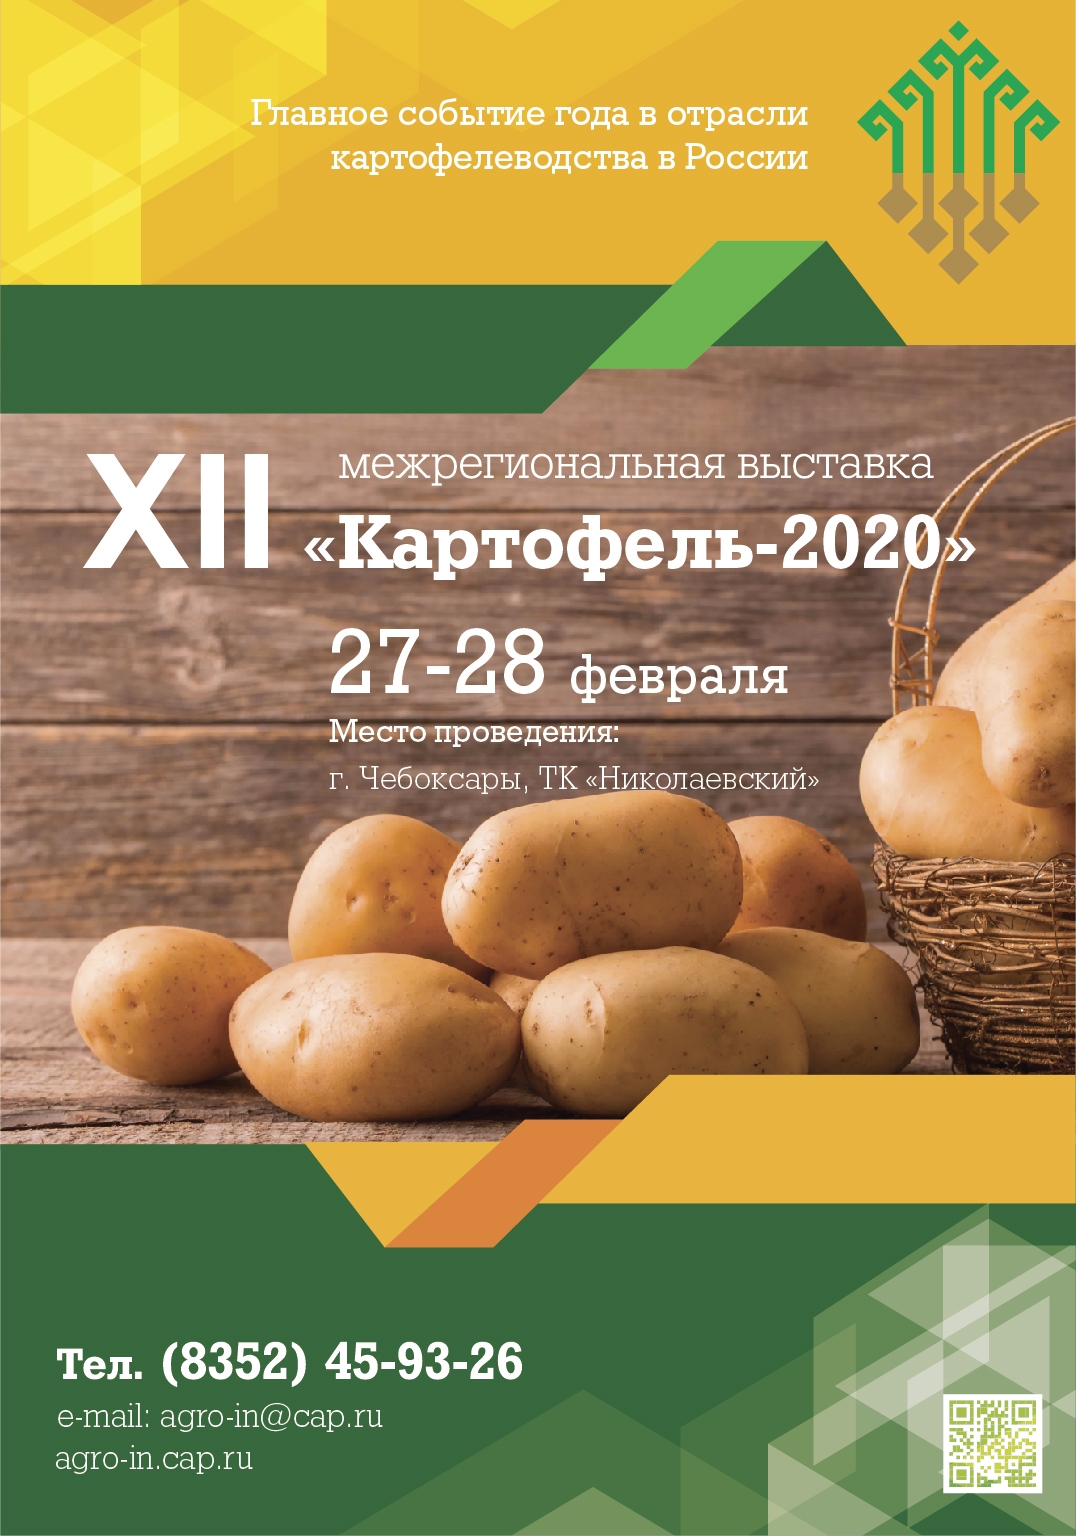 27-28 февраля в Чебоксарах пройдет выставка  «Картофель-2020»